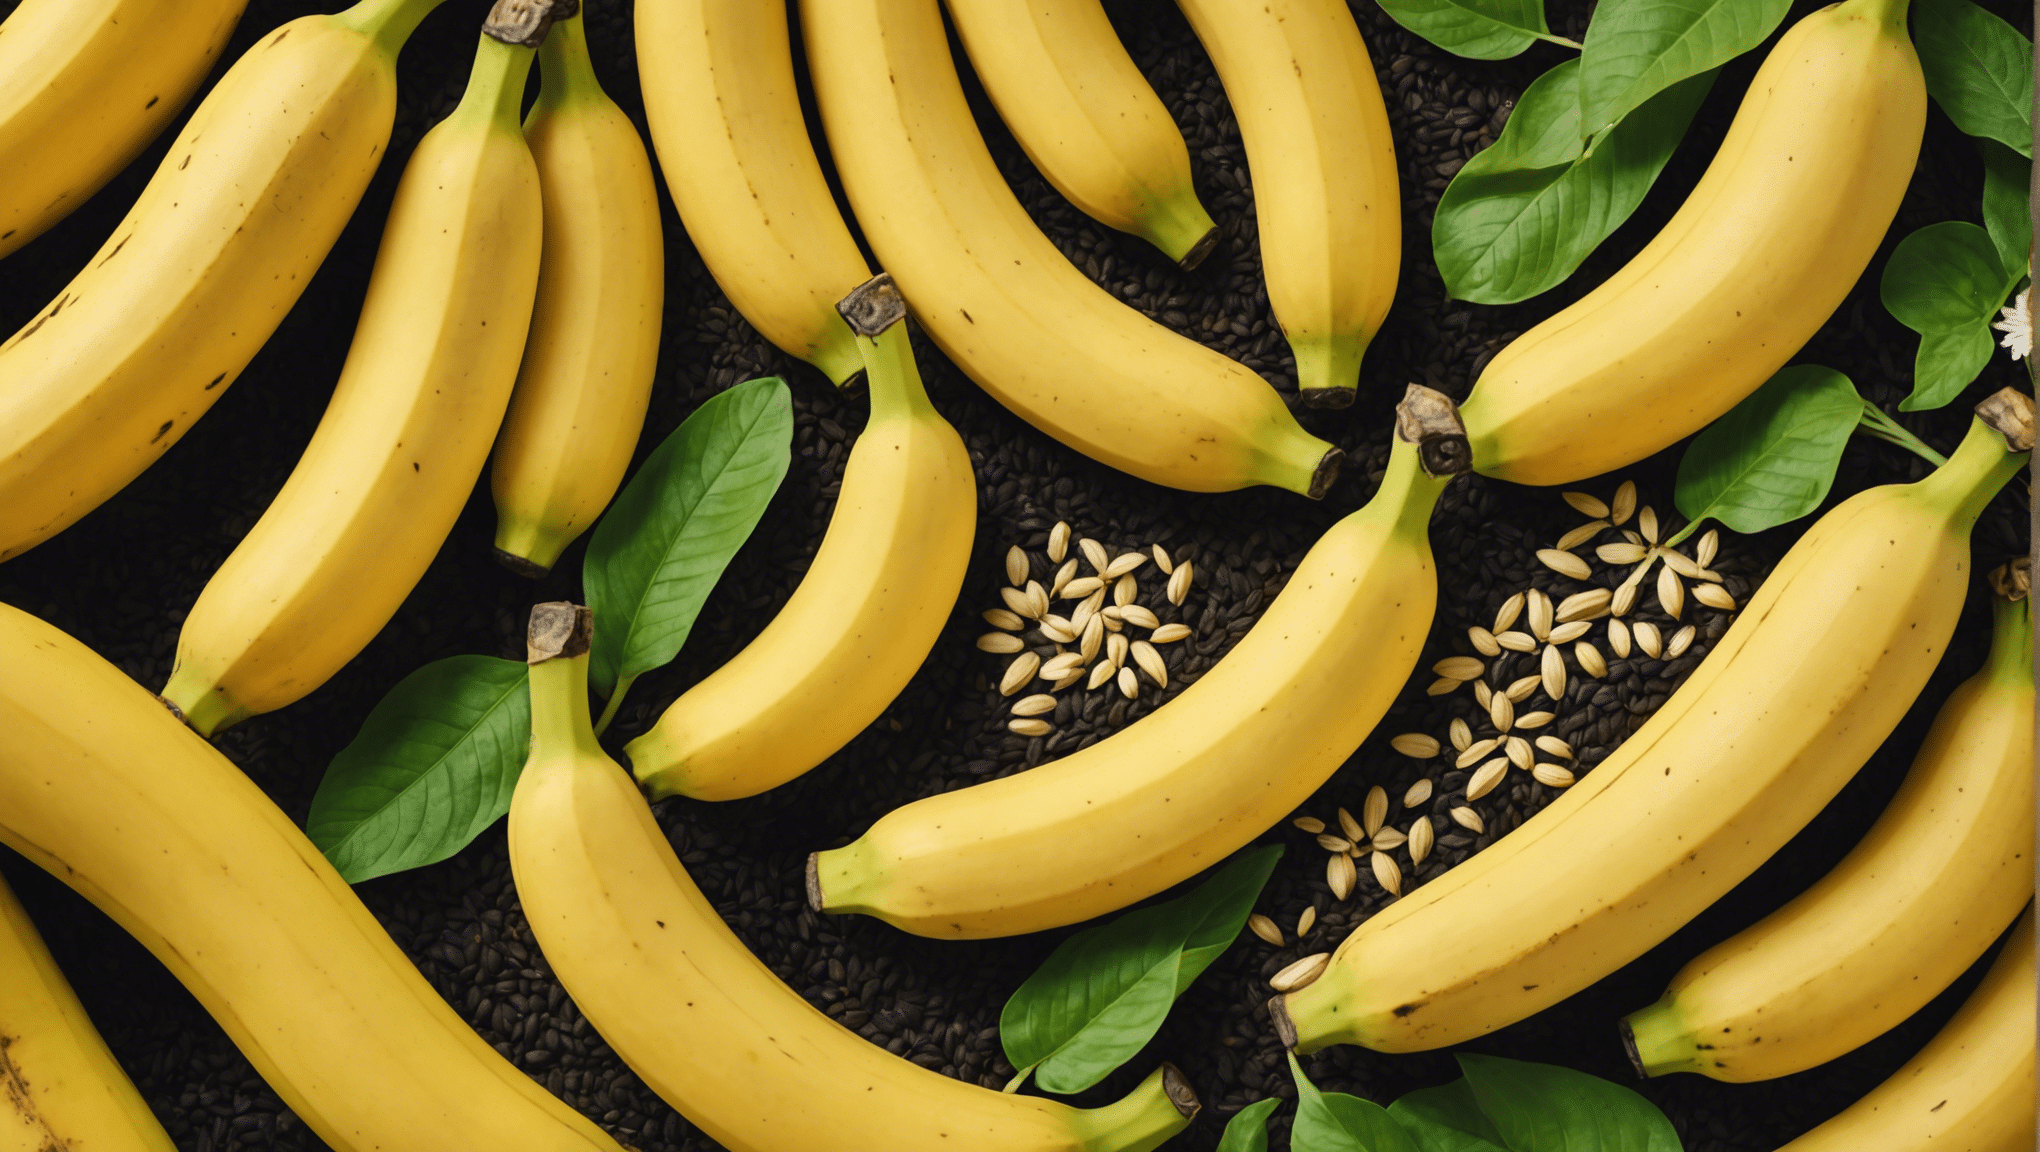 descubra se é seguro comer banana com sementes com nosso guia completo. descubra os riscos e benefícios potenciais do consumo de banana com sementes.